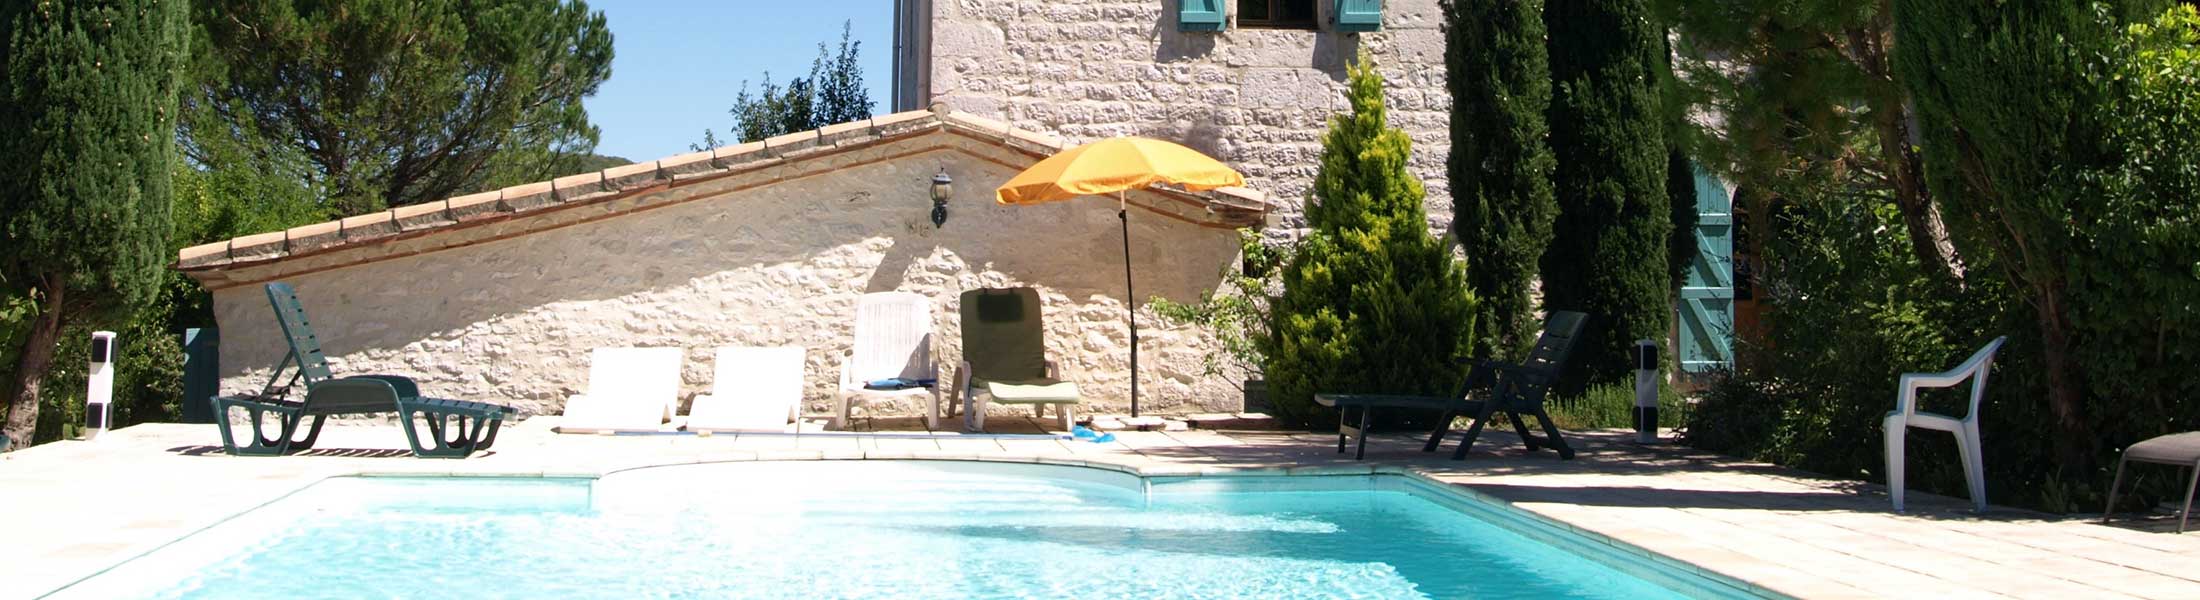 French villa pool, Cahors, Francefrench-villa-pool-cahors-france